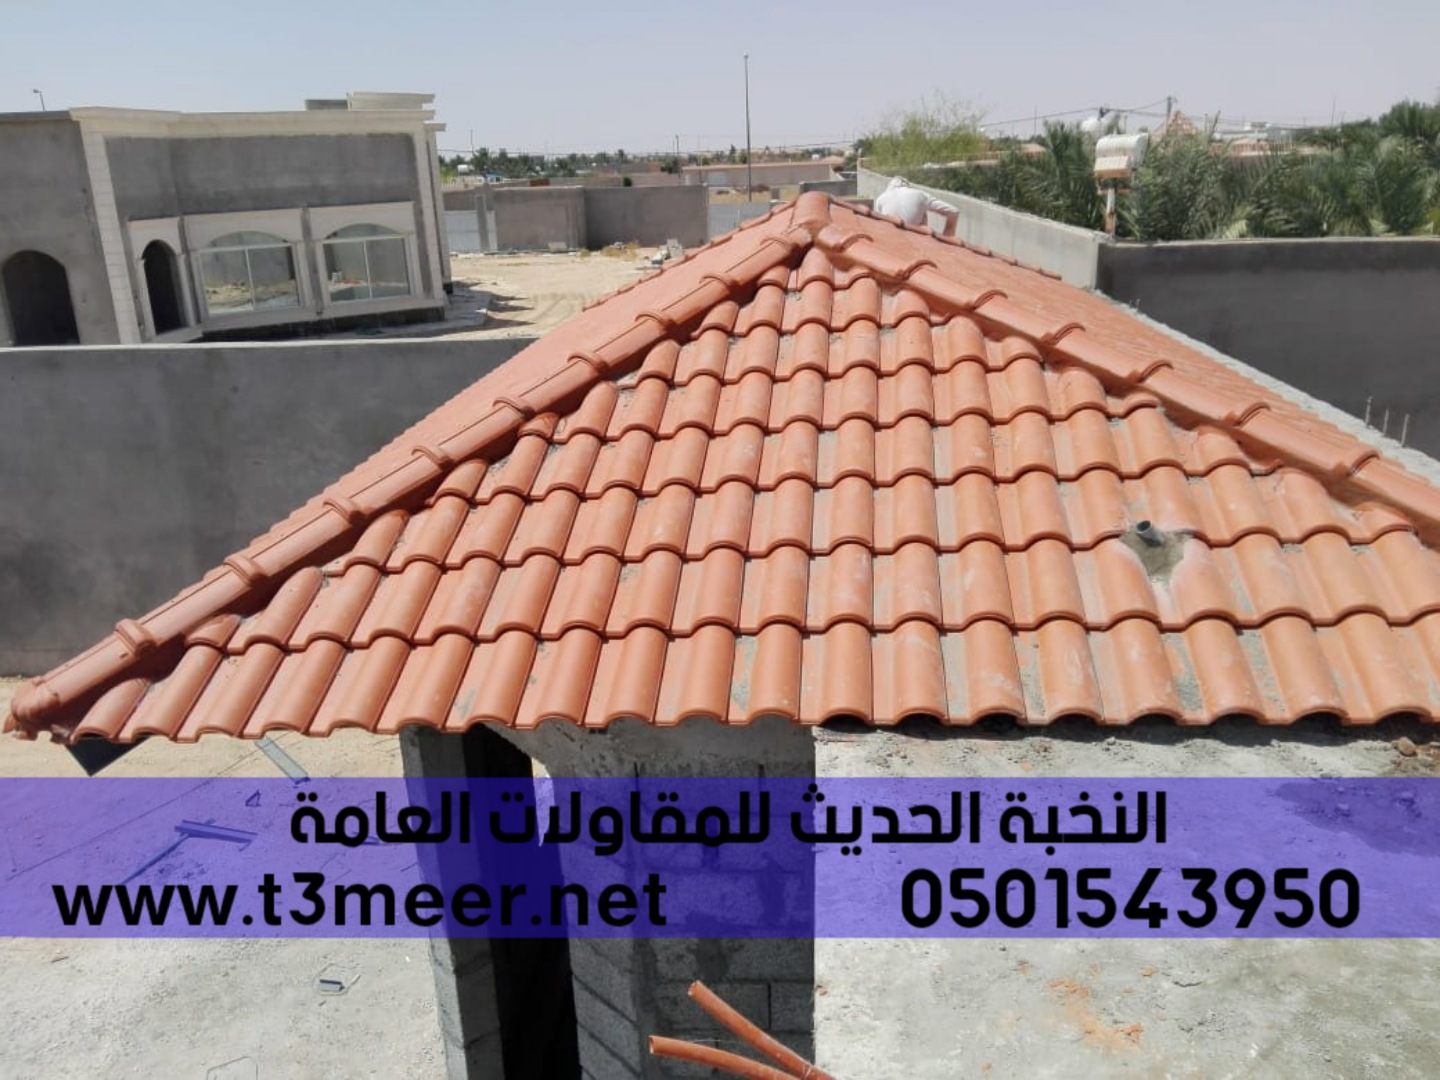 مقاول بناء ملحق في الرياض جدة الشرقية, 0501543950  P_25466luep4